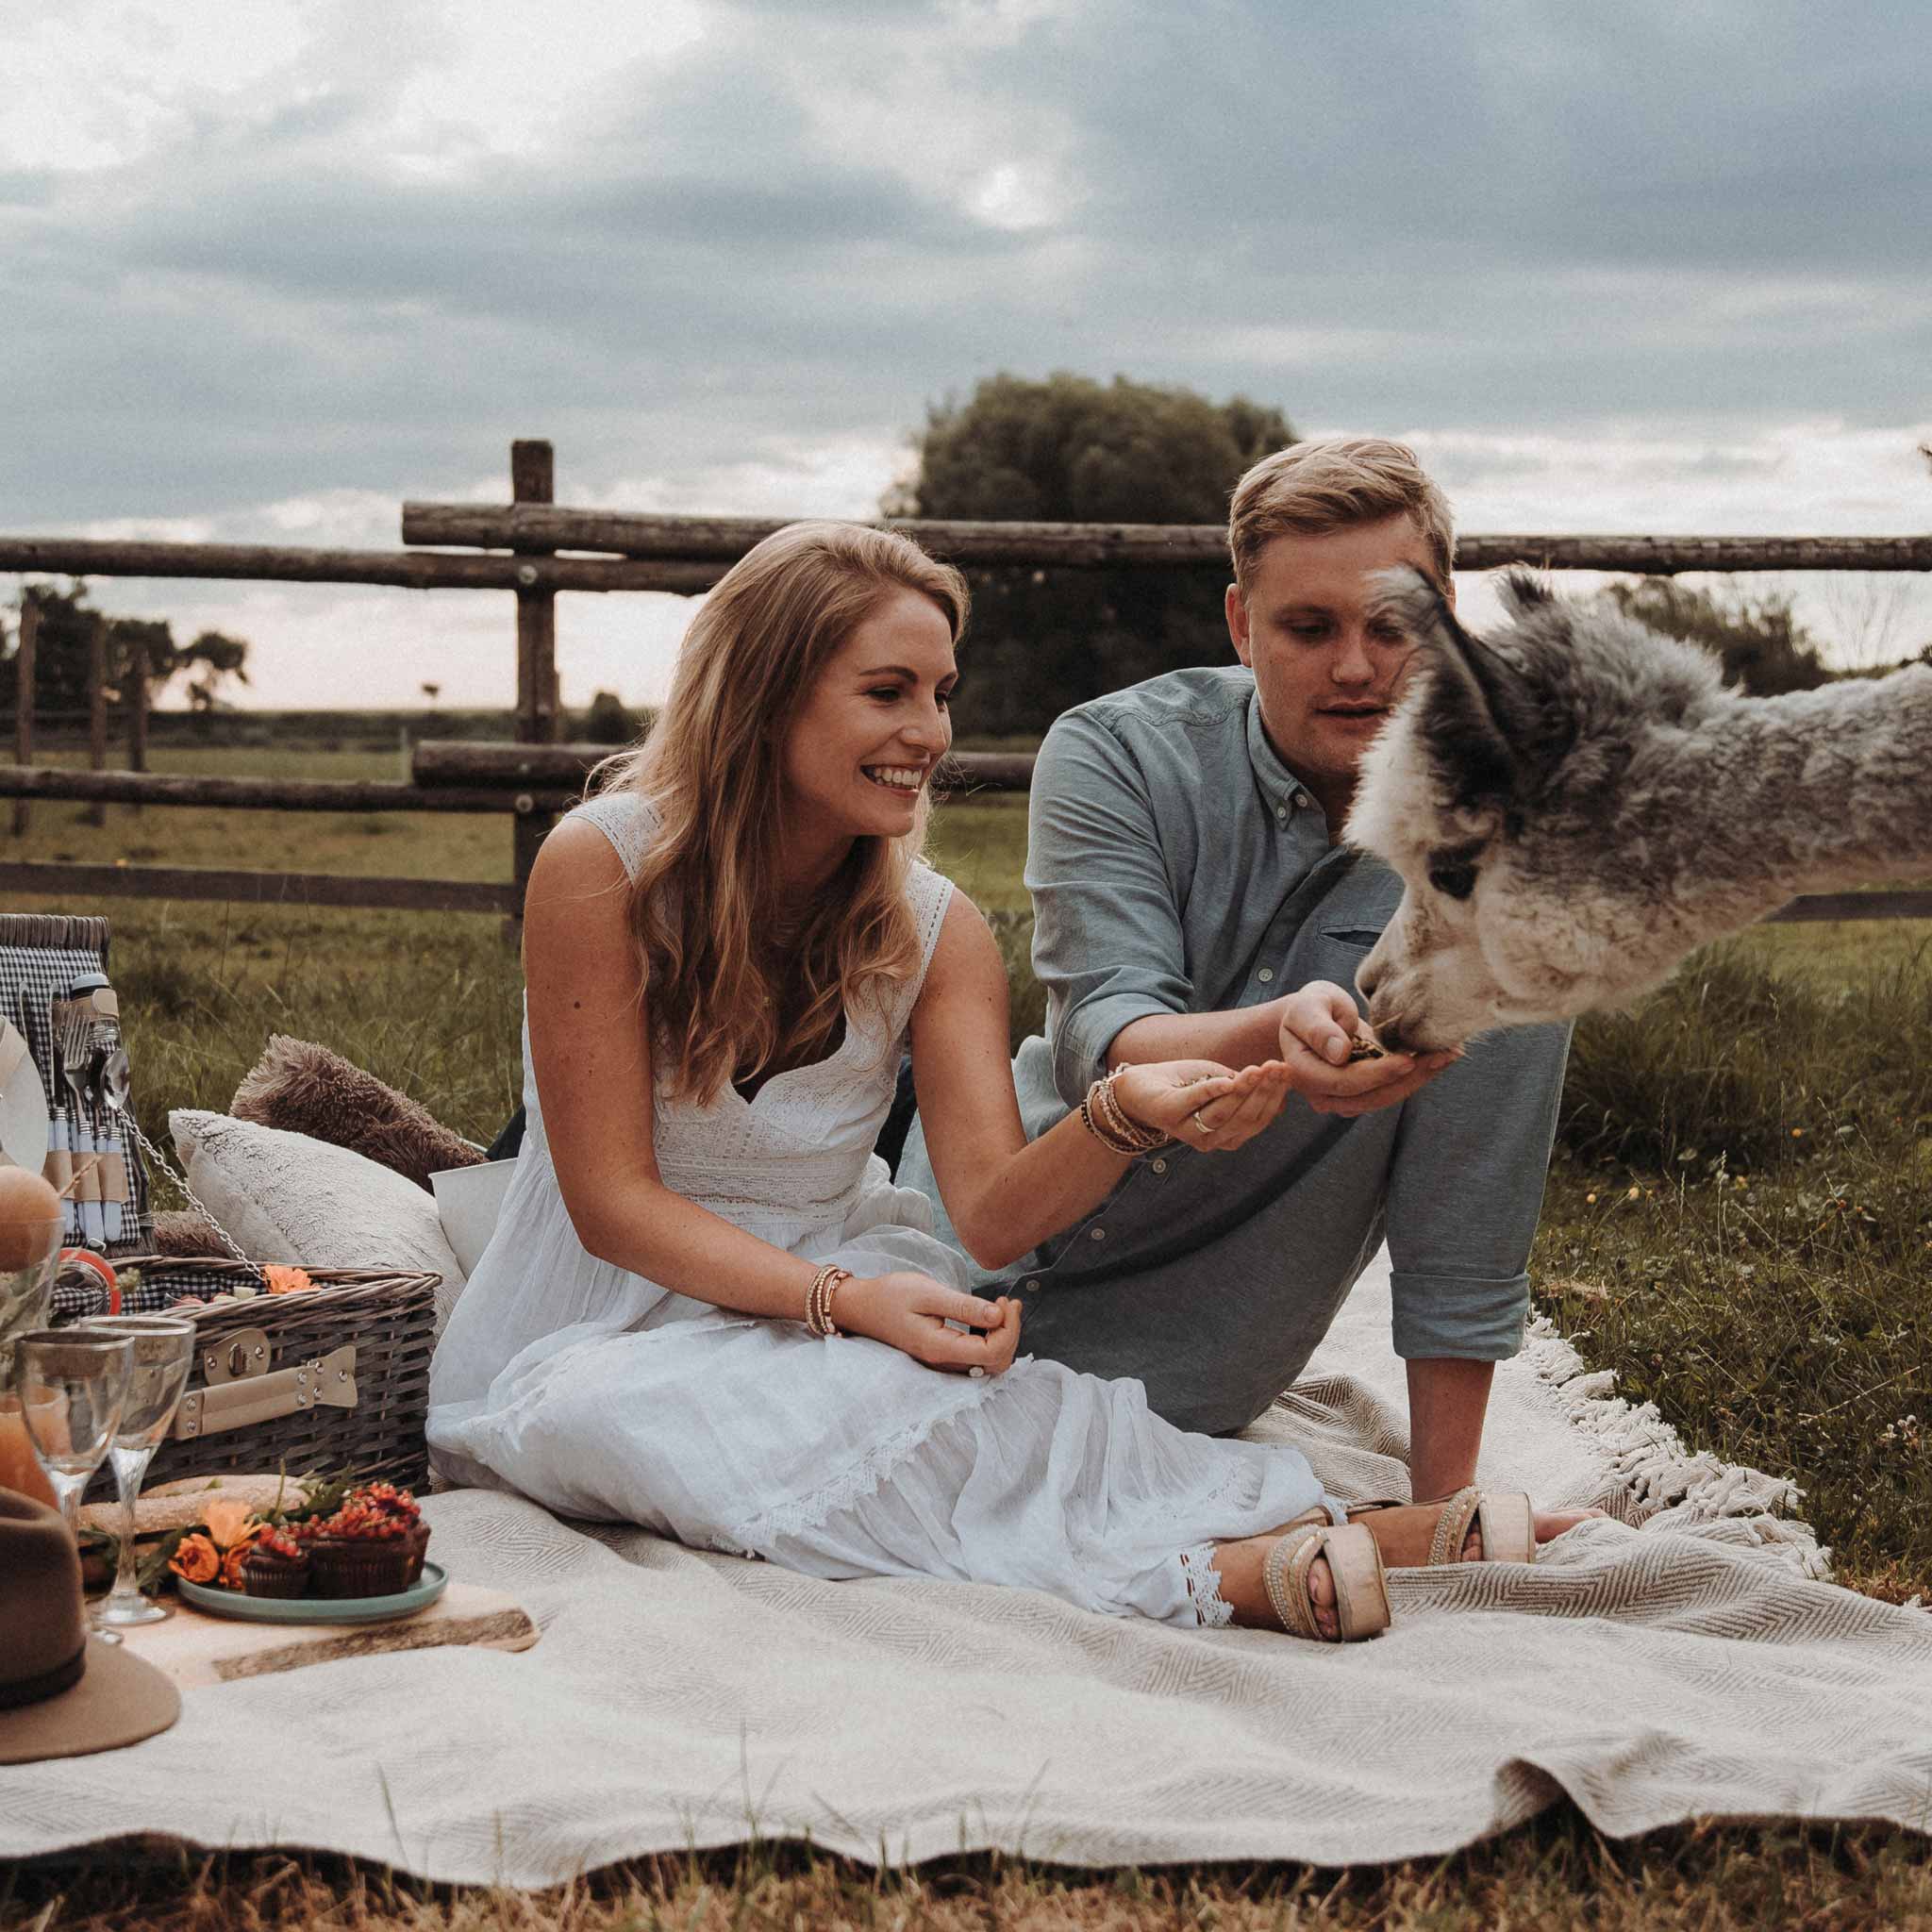 Picknick mit Alpakas auf der Wiese: Ein unvergessliches Erlebnis